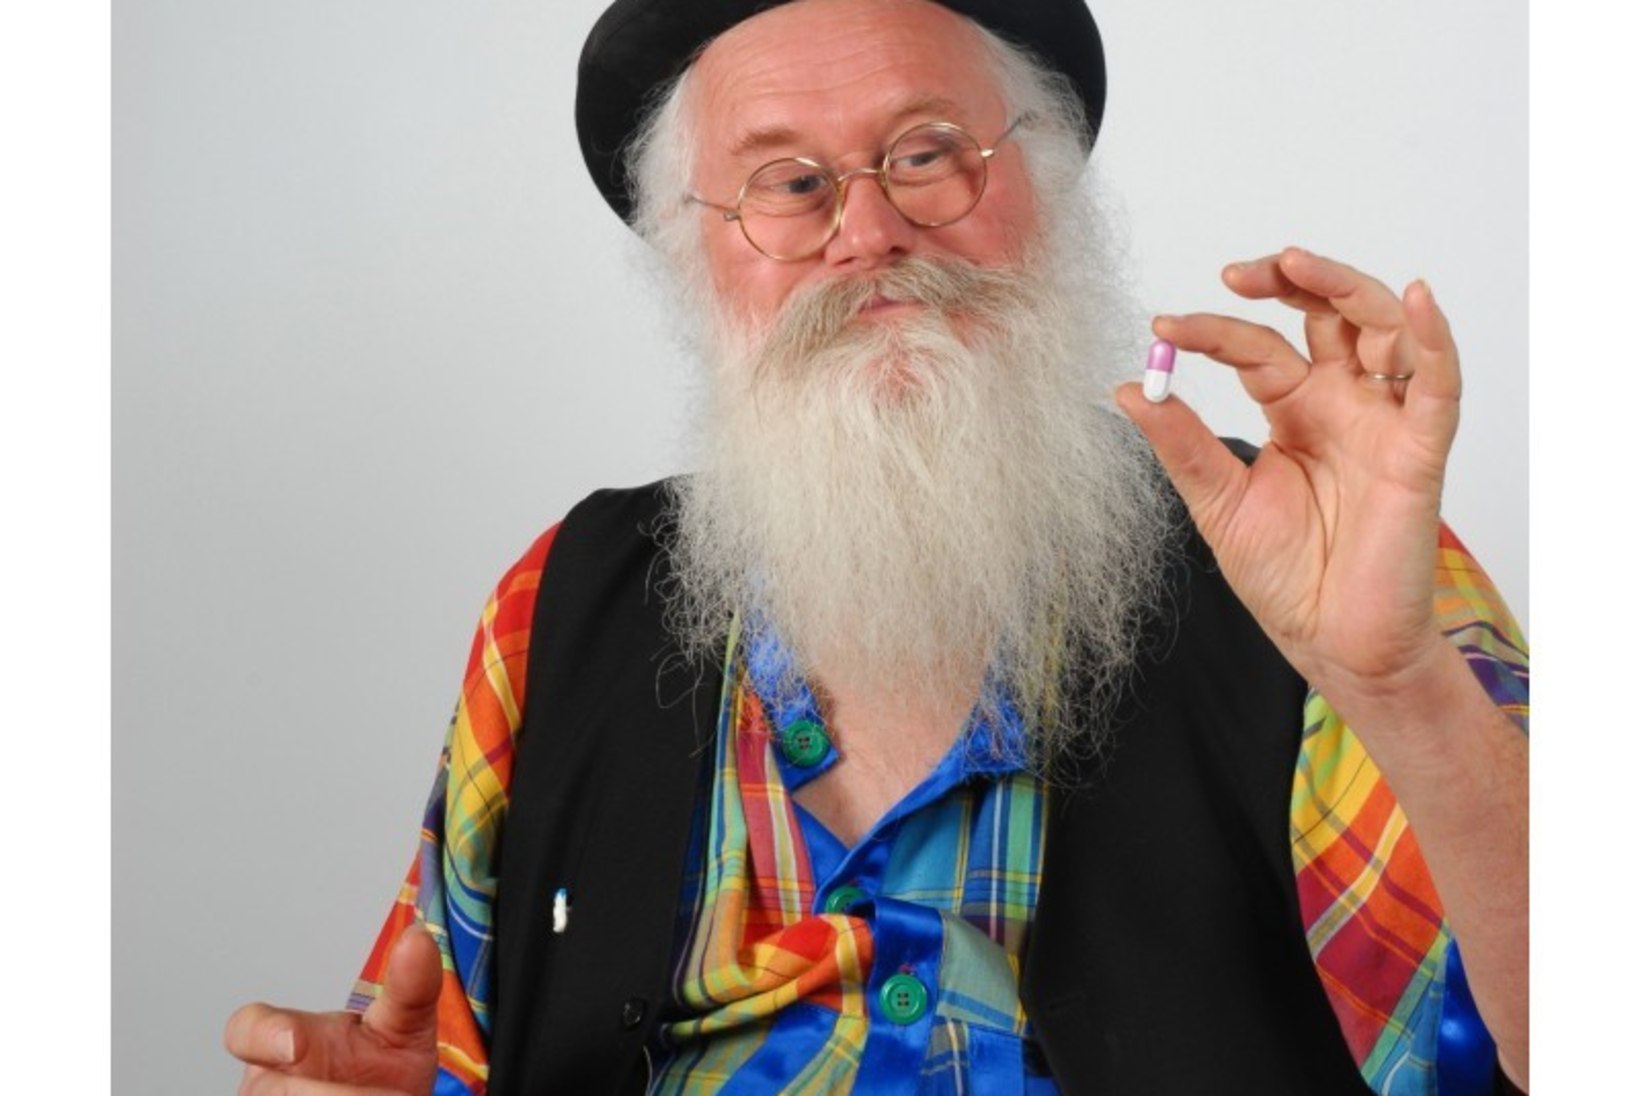 ŠOKOLAADINE KÕHUTUUL: 65aastane prantslane leiutas tableti, mis paneb peeretuse hõrgult lõhnama